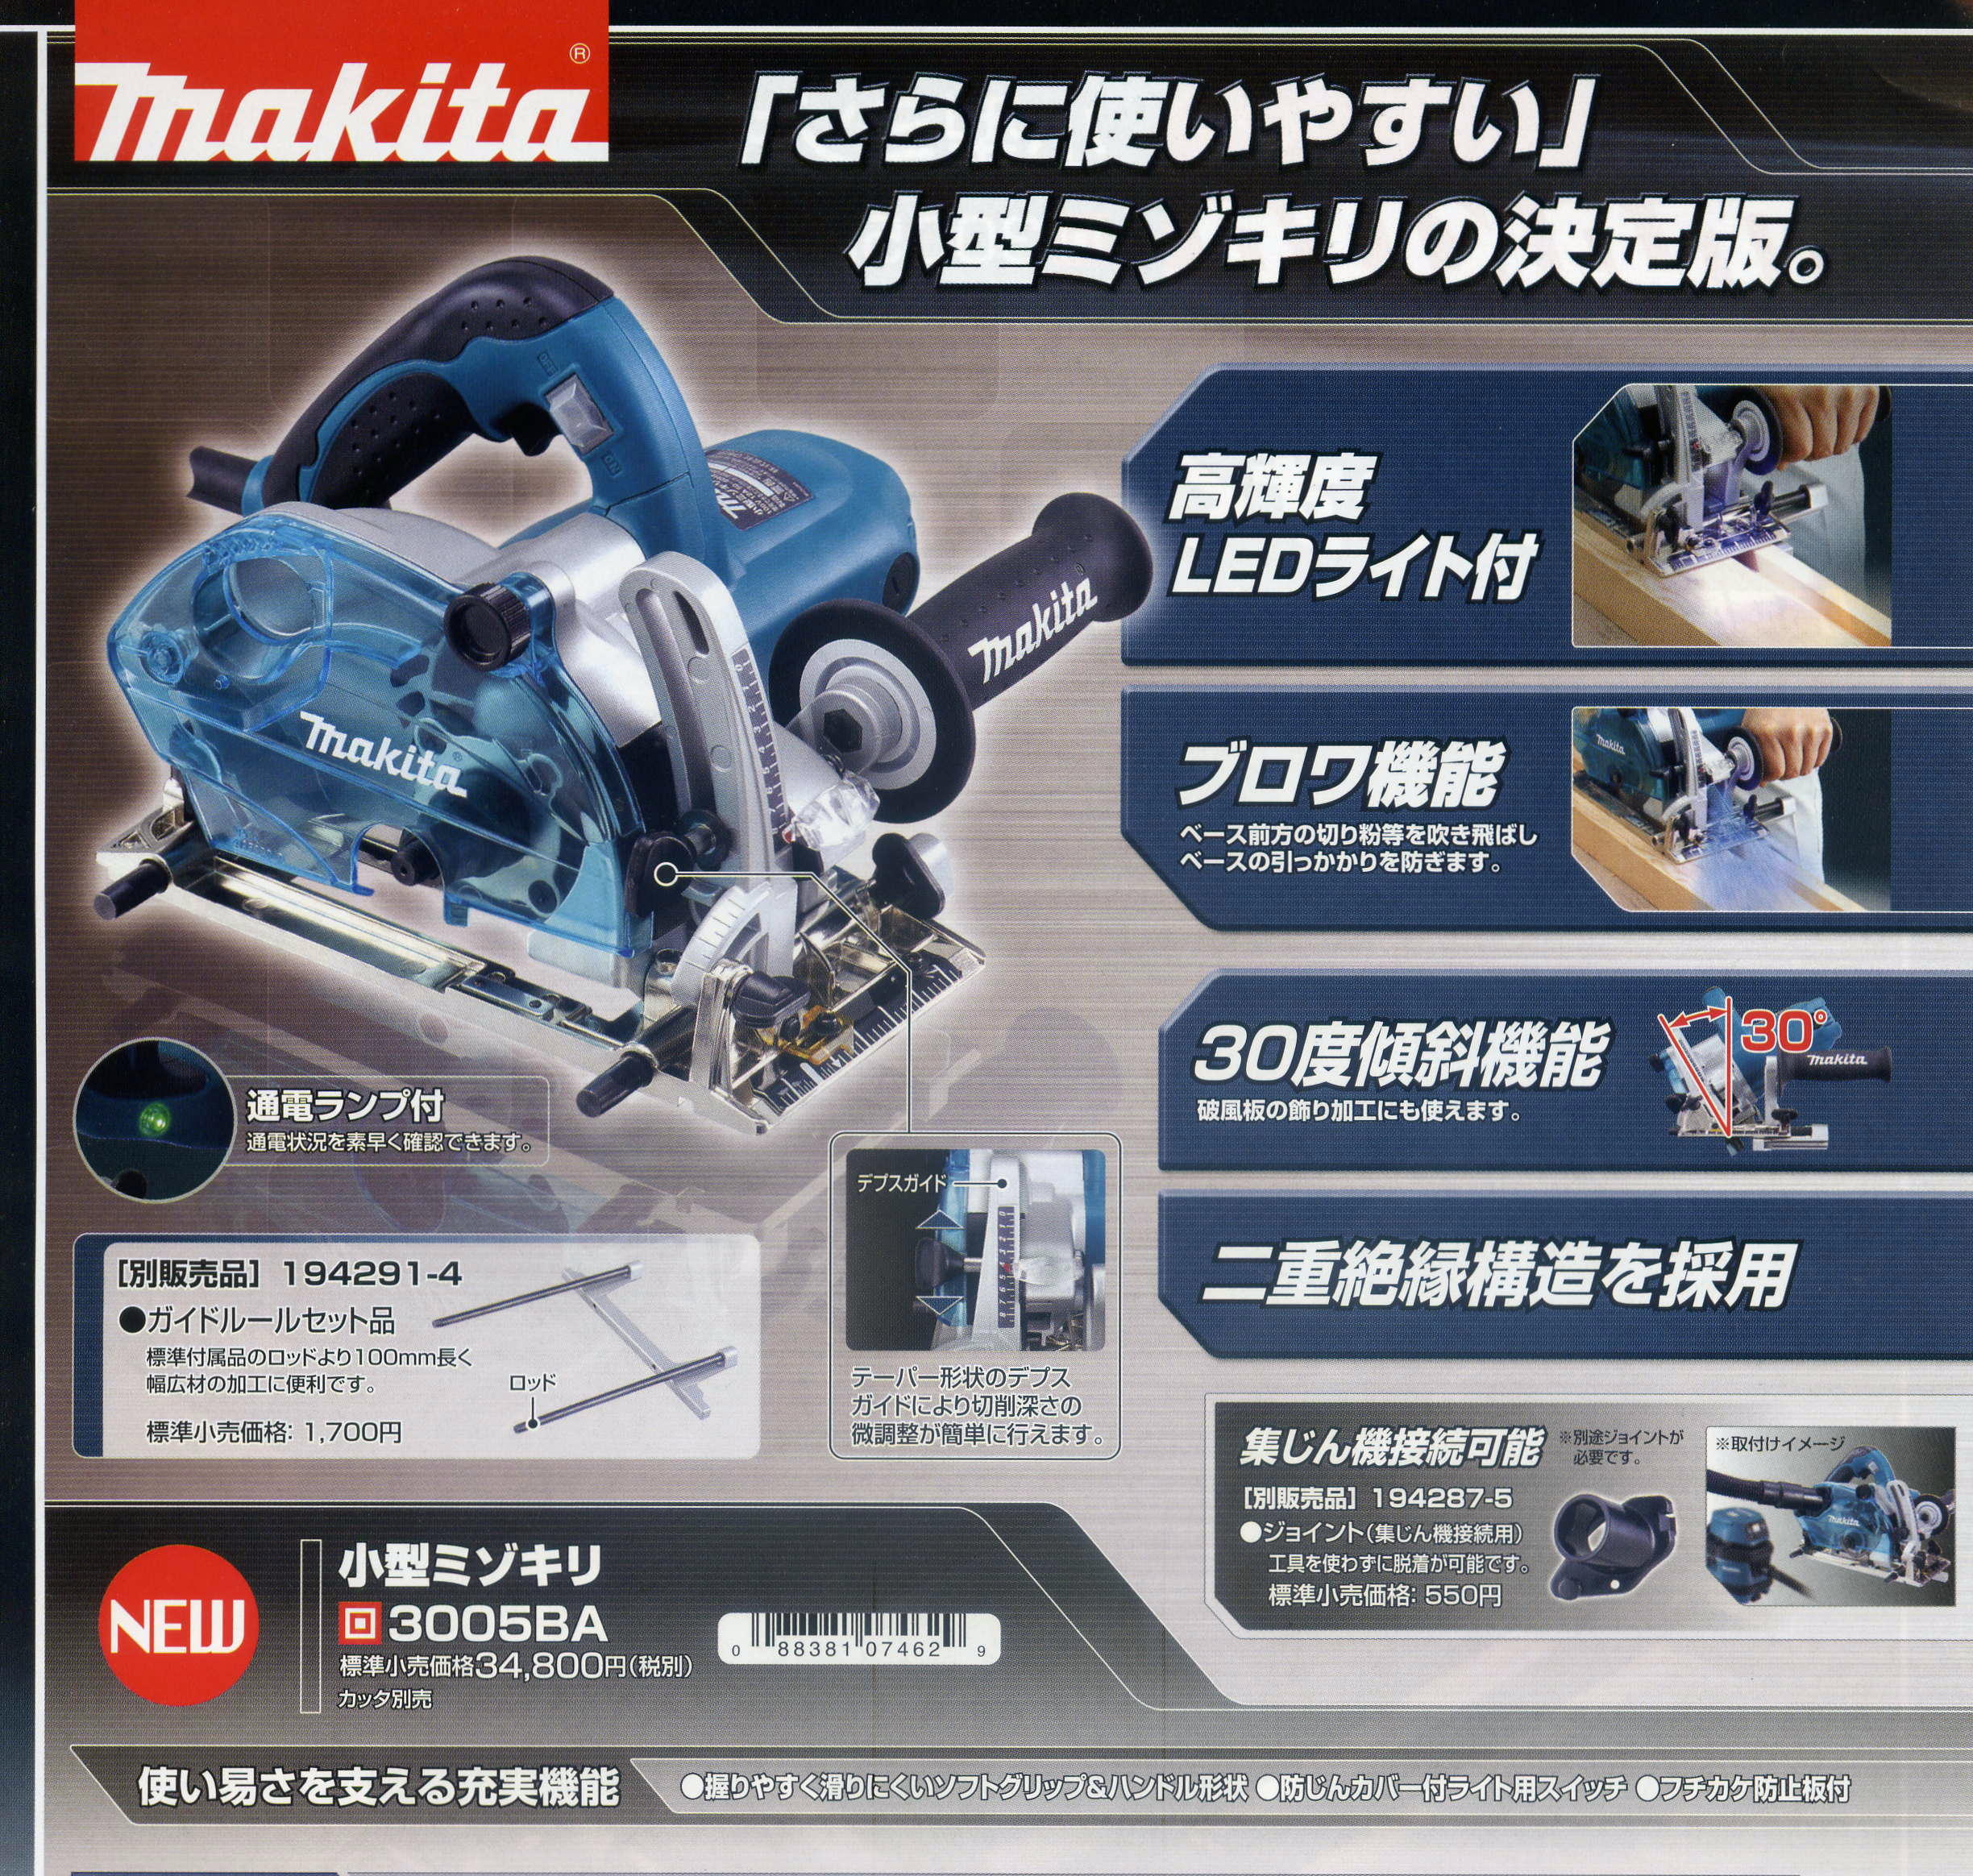 マキタ 小型ミゾキリ 3005BA (カッタ別売) 電動工具・エアー工具・大工